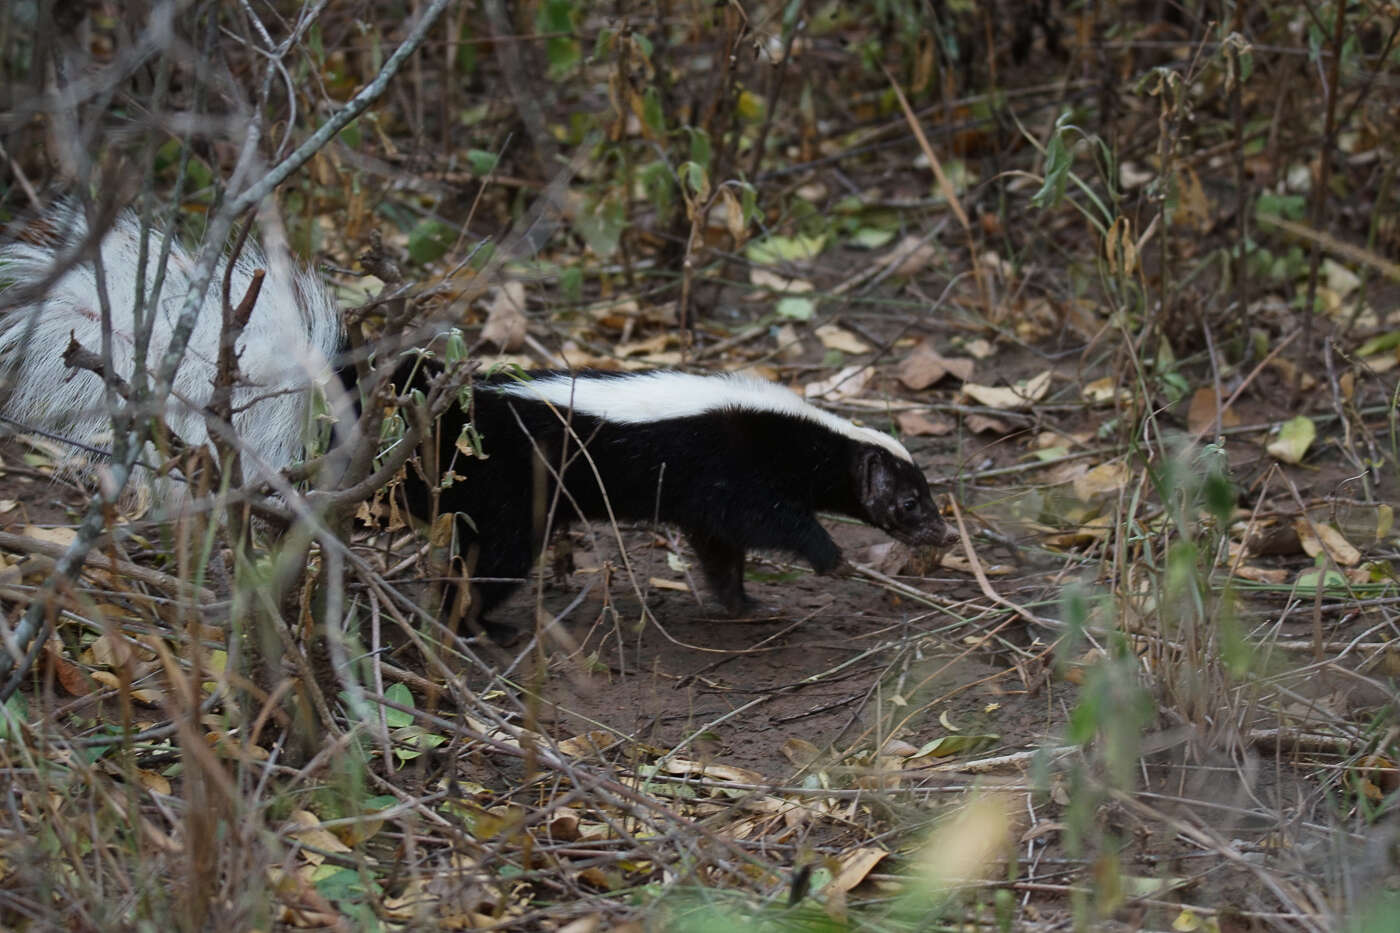 Image of Molina's Hog-nosed Skunk